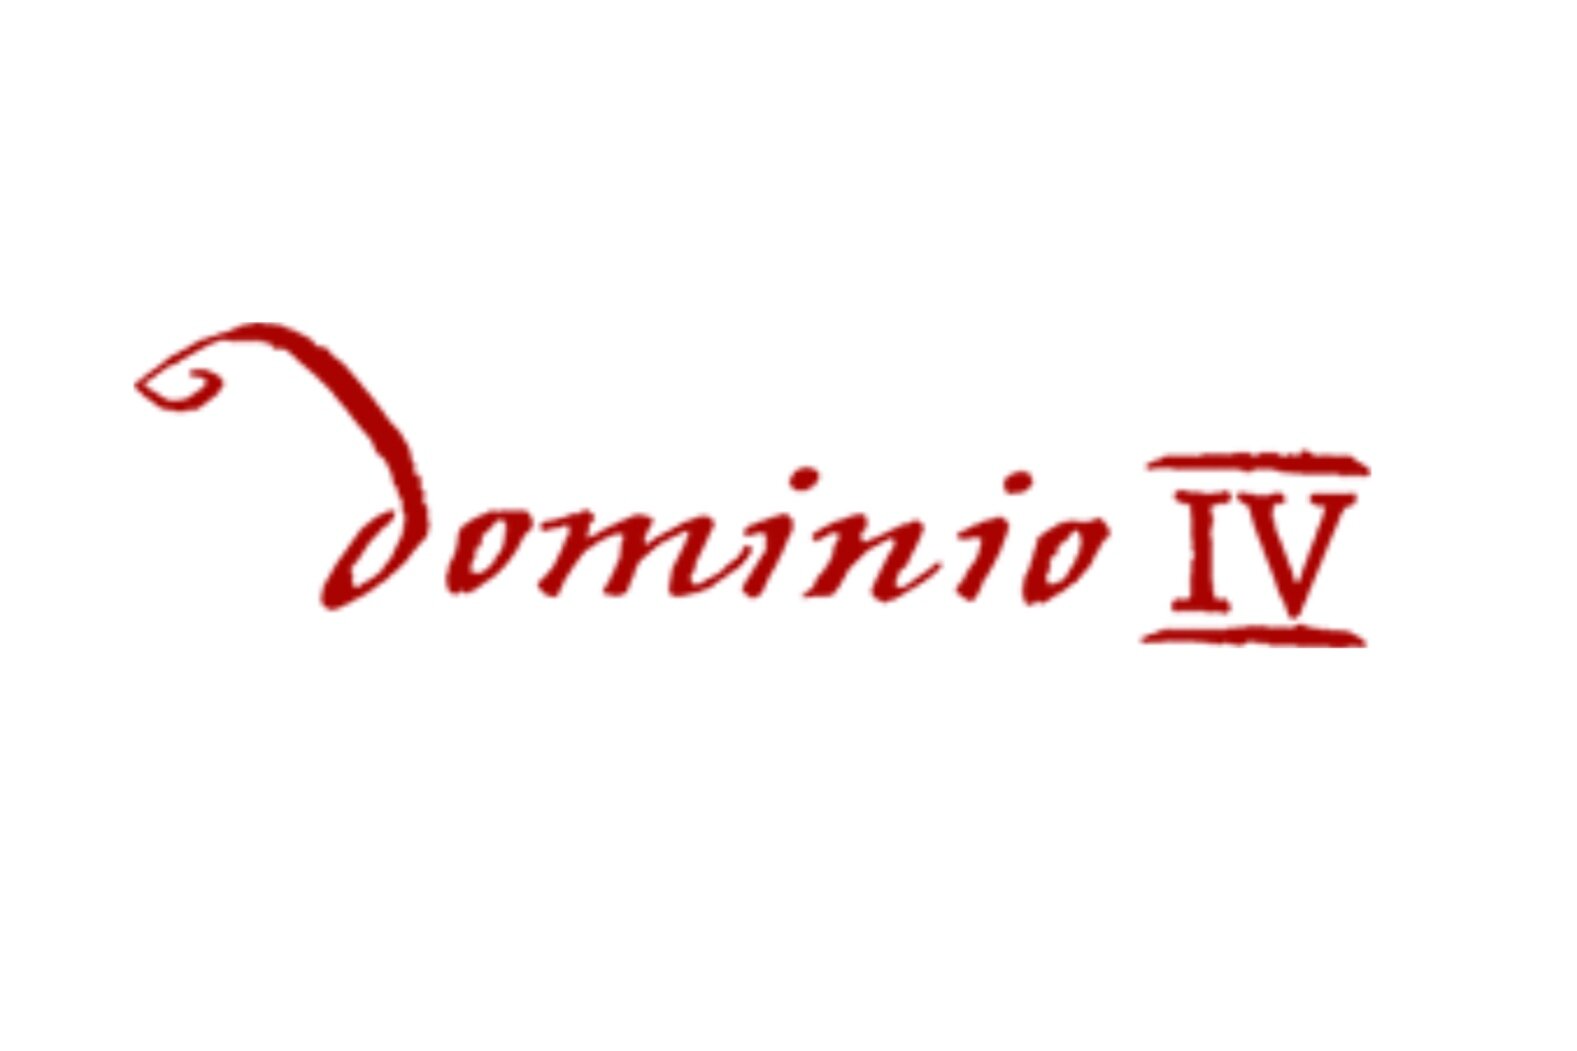 Dominio IV